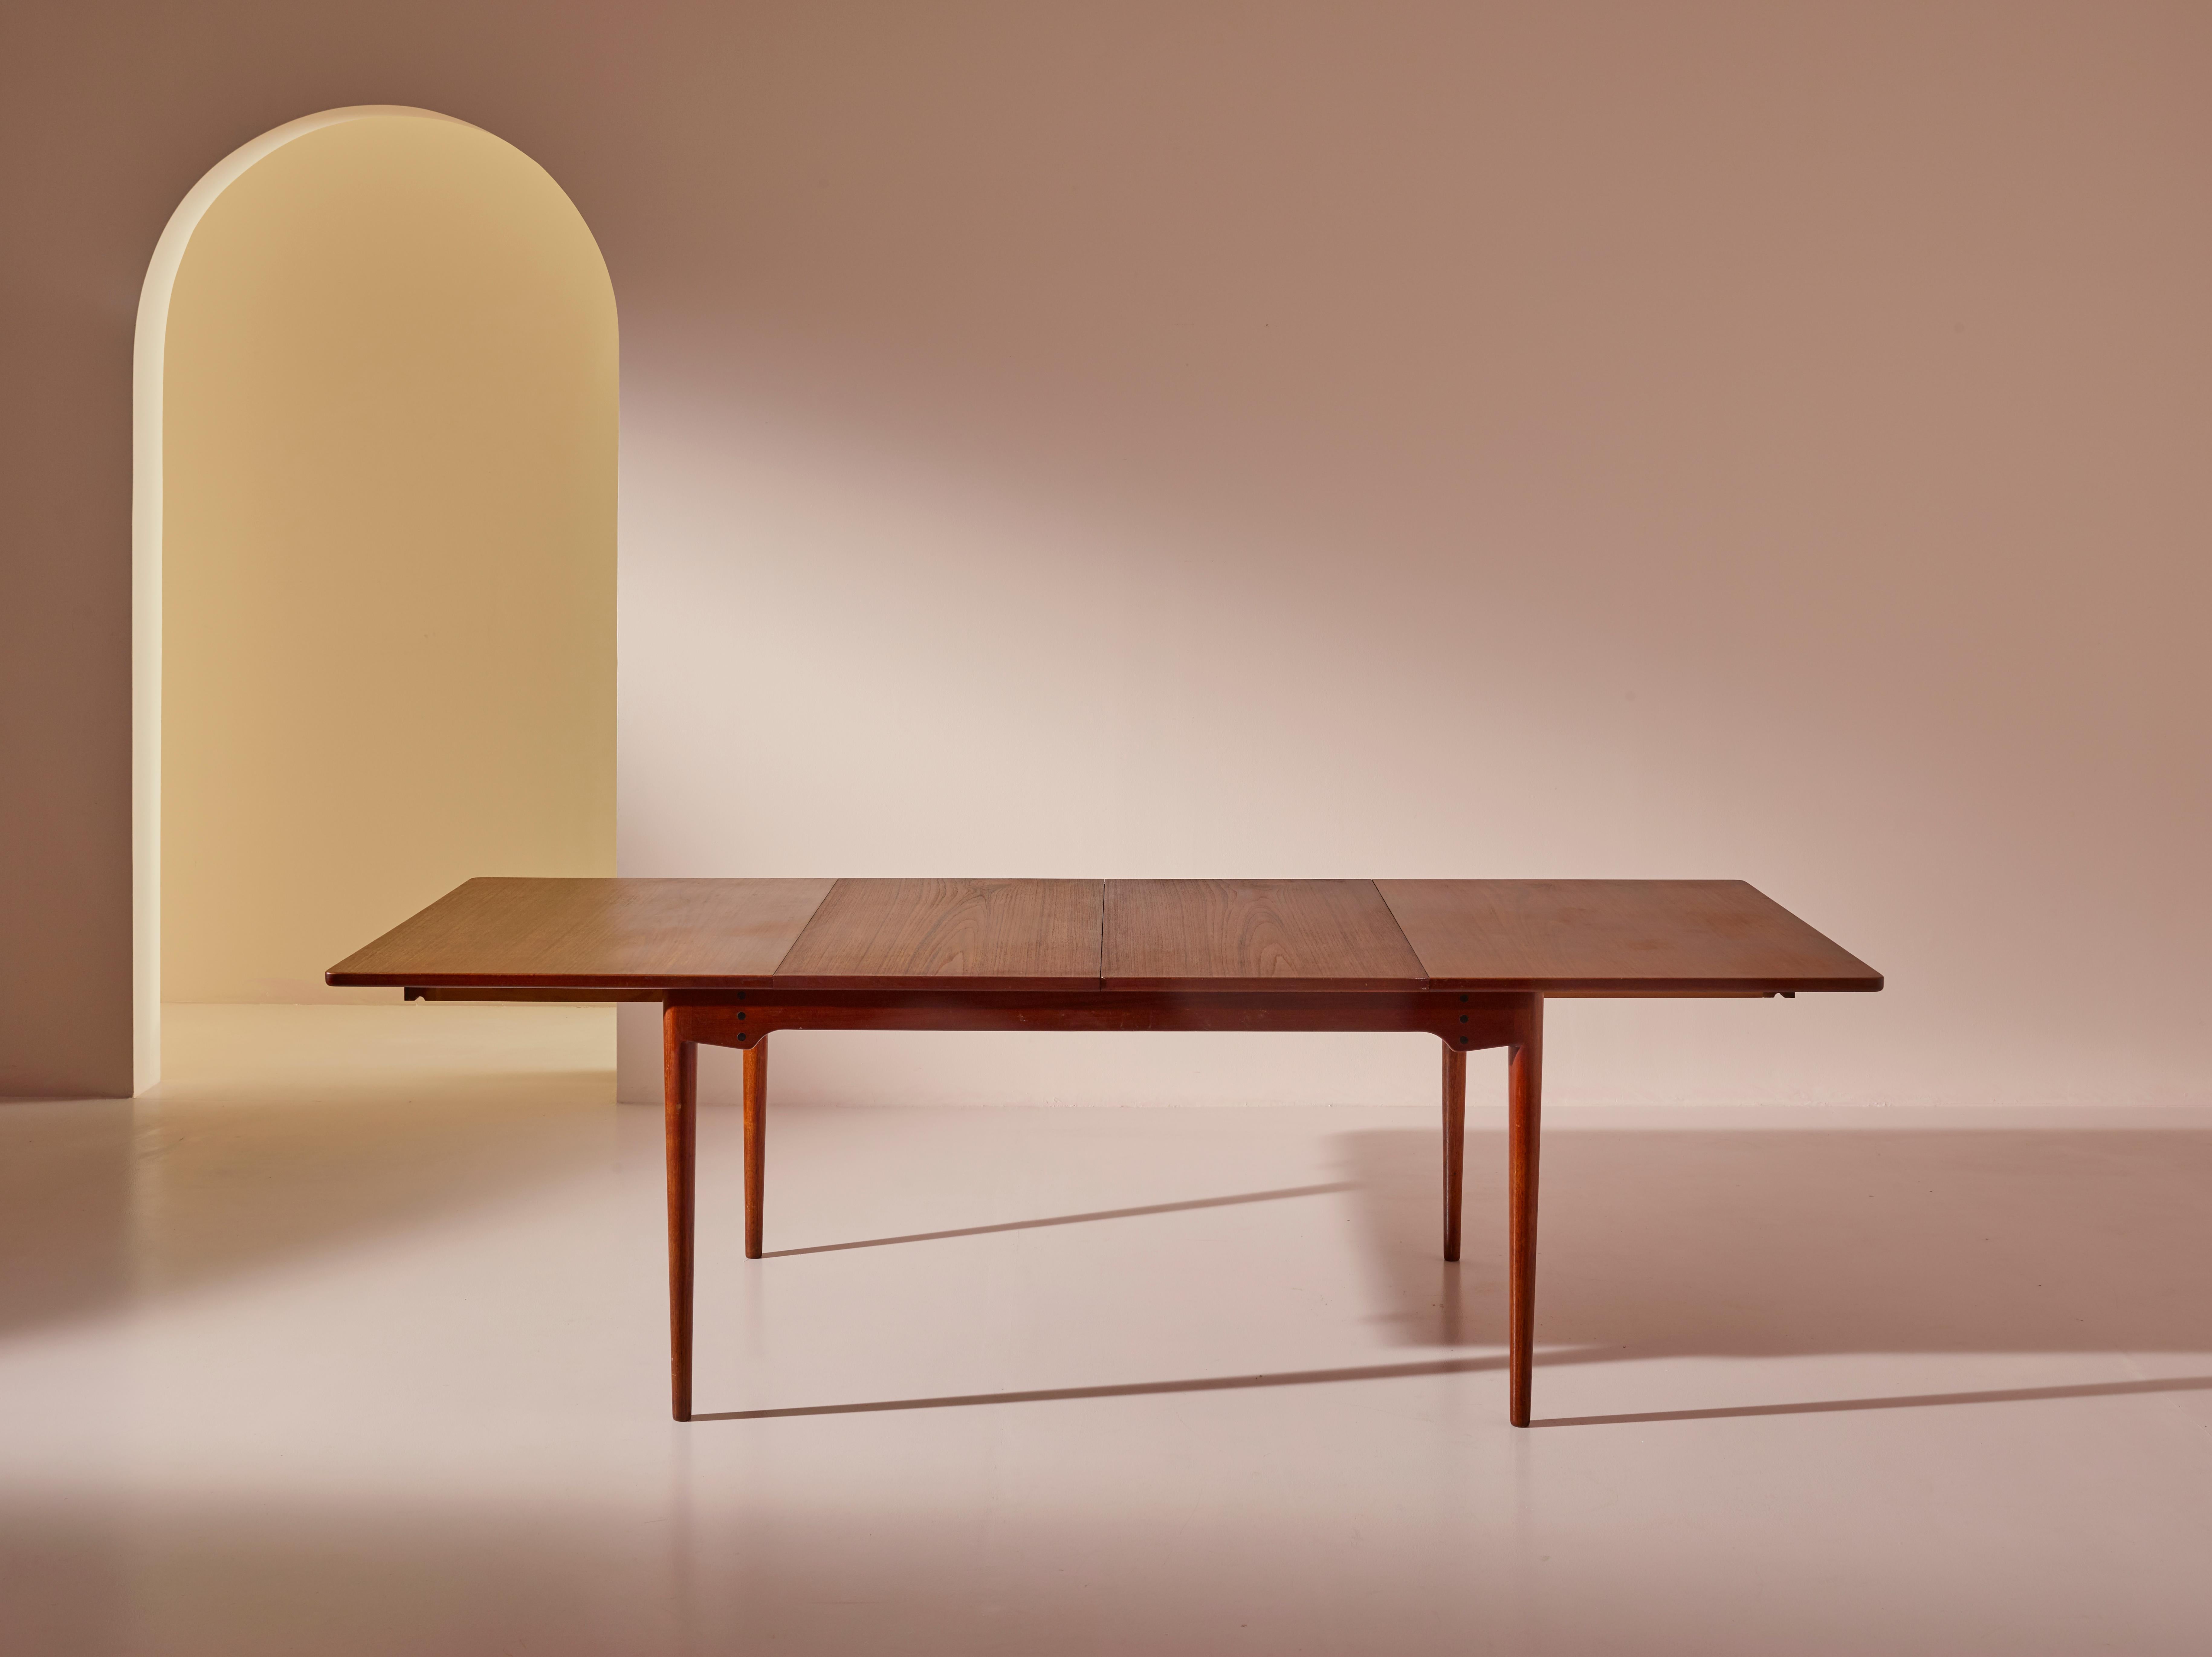 Table de salle à manger extensible modèle BO65, conçue par Finn Juhls et fabriquée par l'ébéniste danois Bovirke. Créé en 1952, ce modèle présente une esthétique épurée et minimaliste avec des lignes nettes, des formes organiques et une fabrication